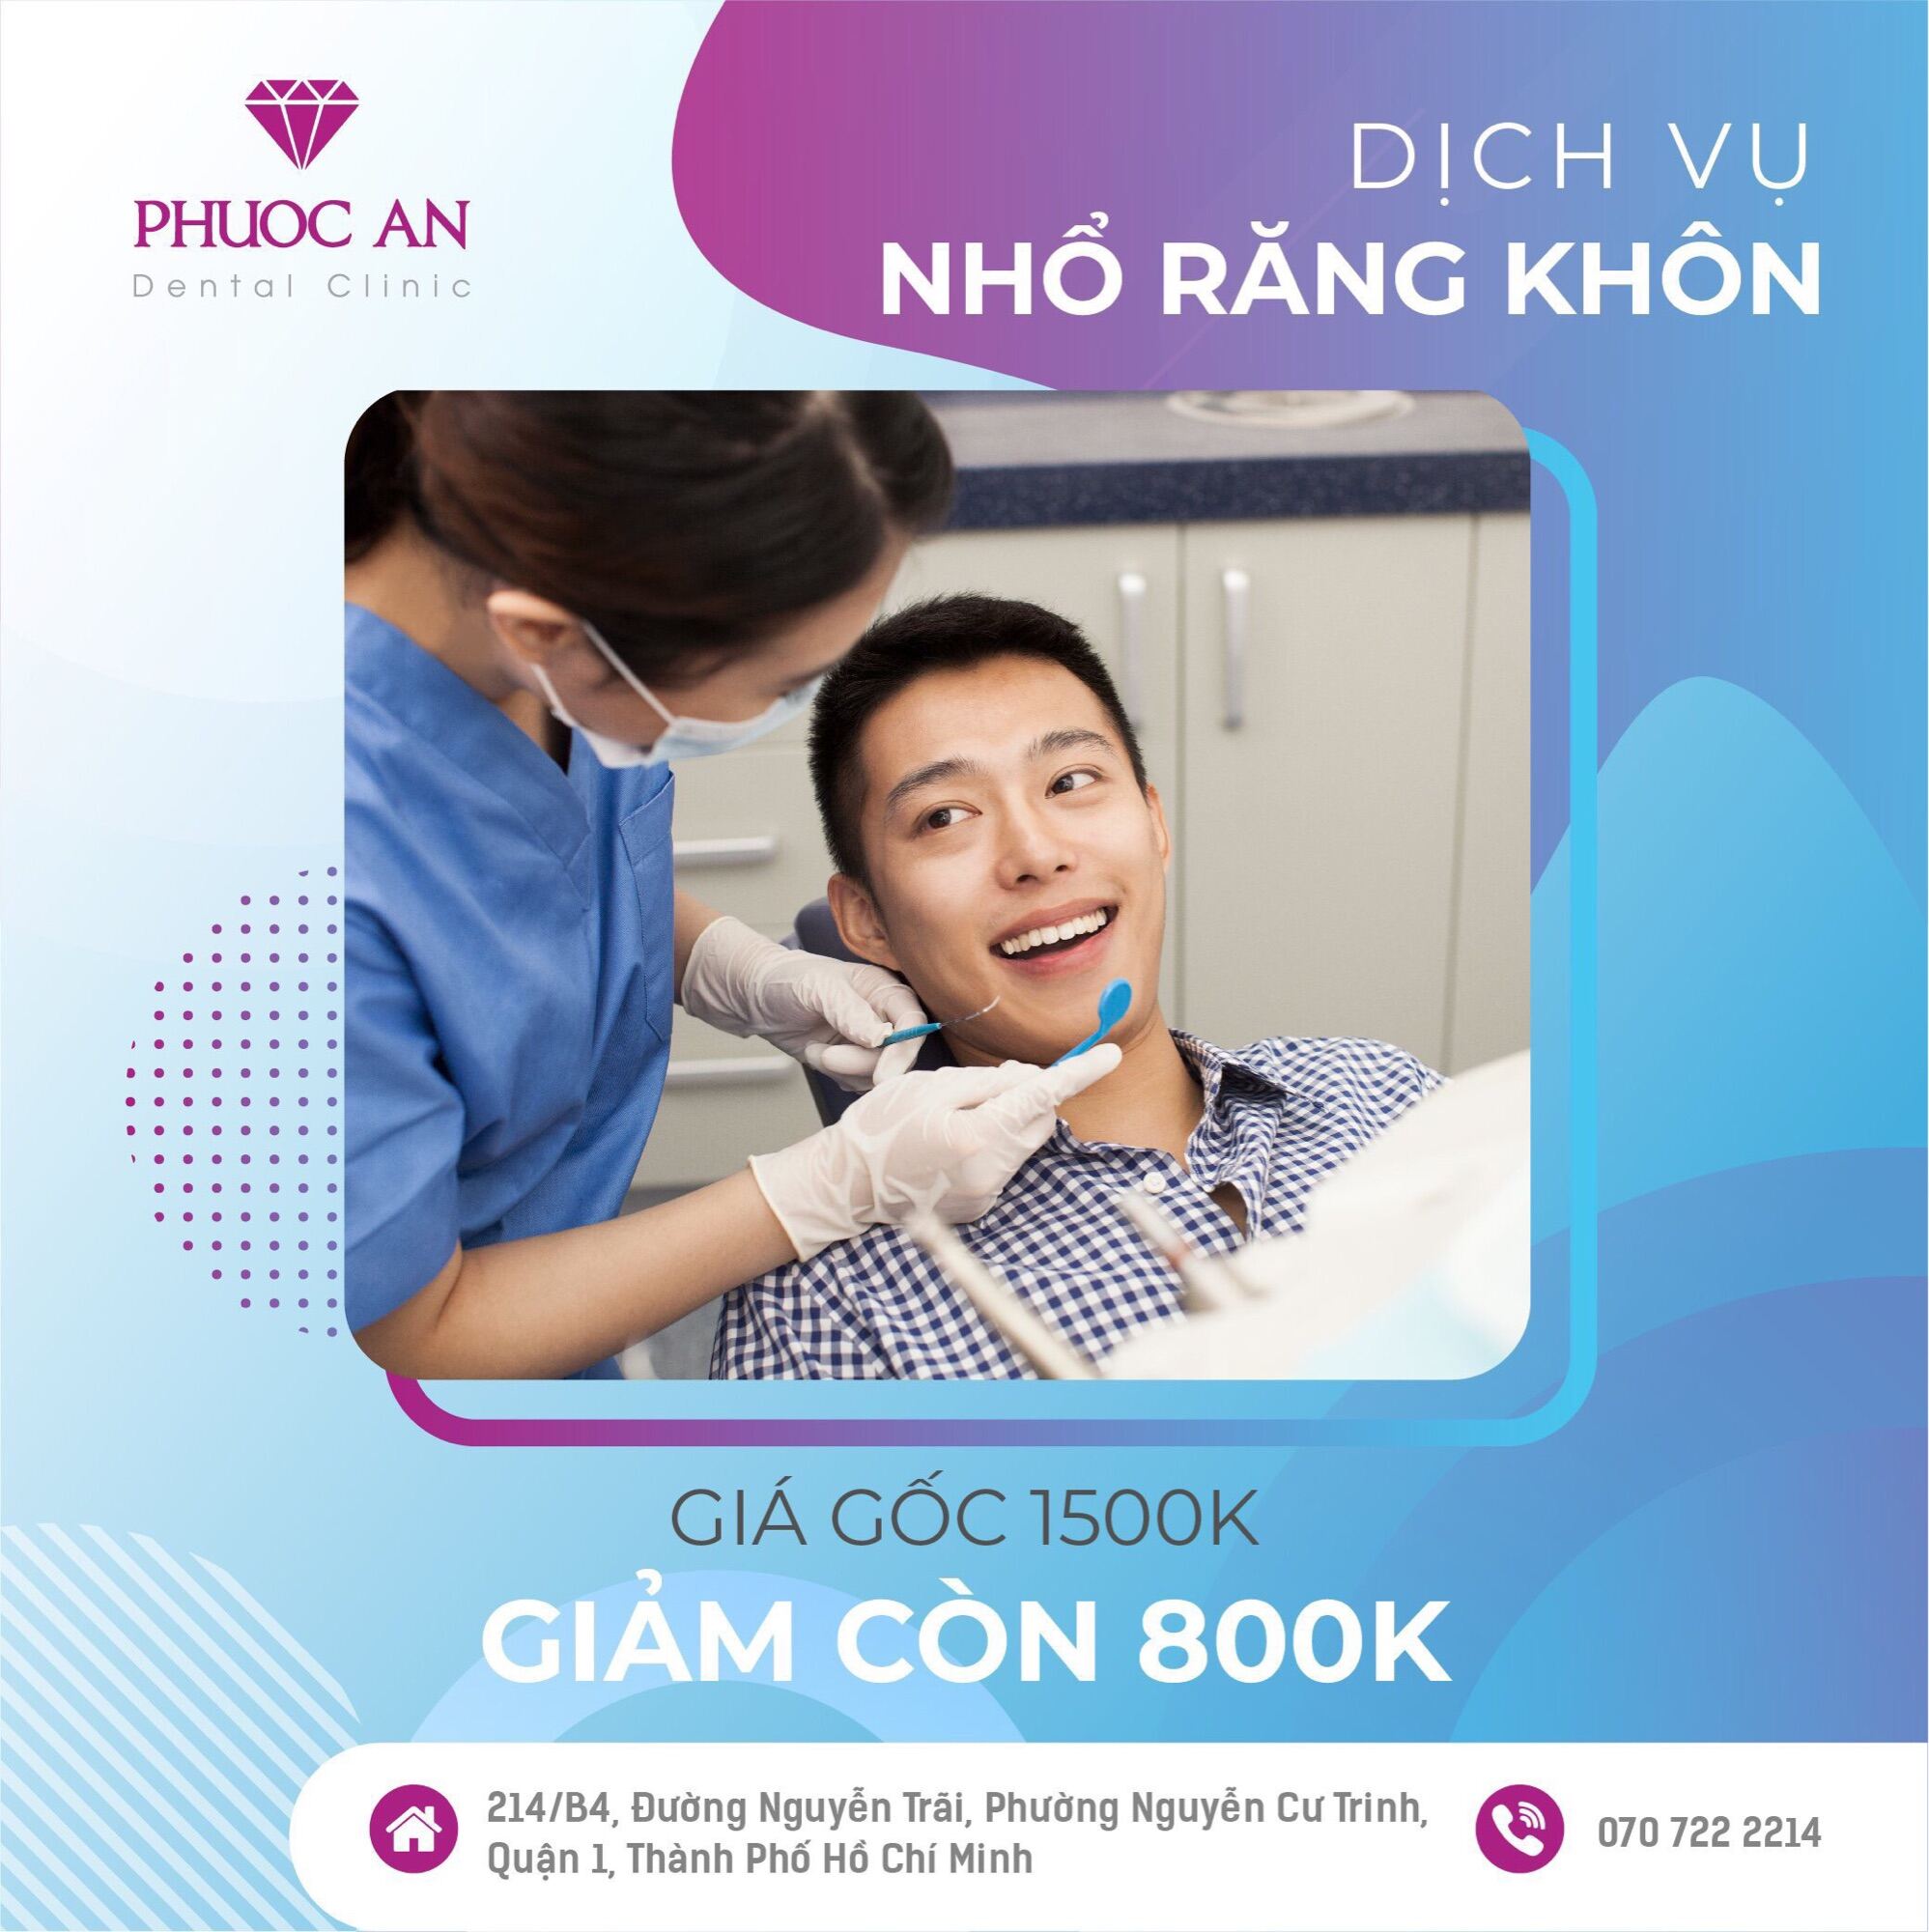 Hồ Chí Minh ( Voucher) Dịch vụ nhổ răng khôn giảm mạnh tại Nha Khoa Phước An.